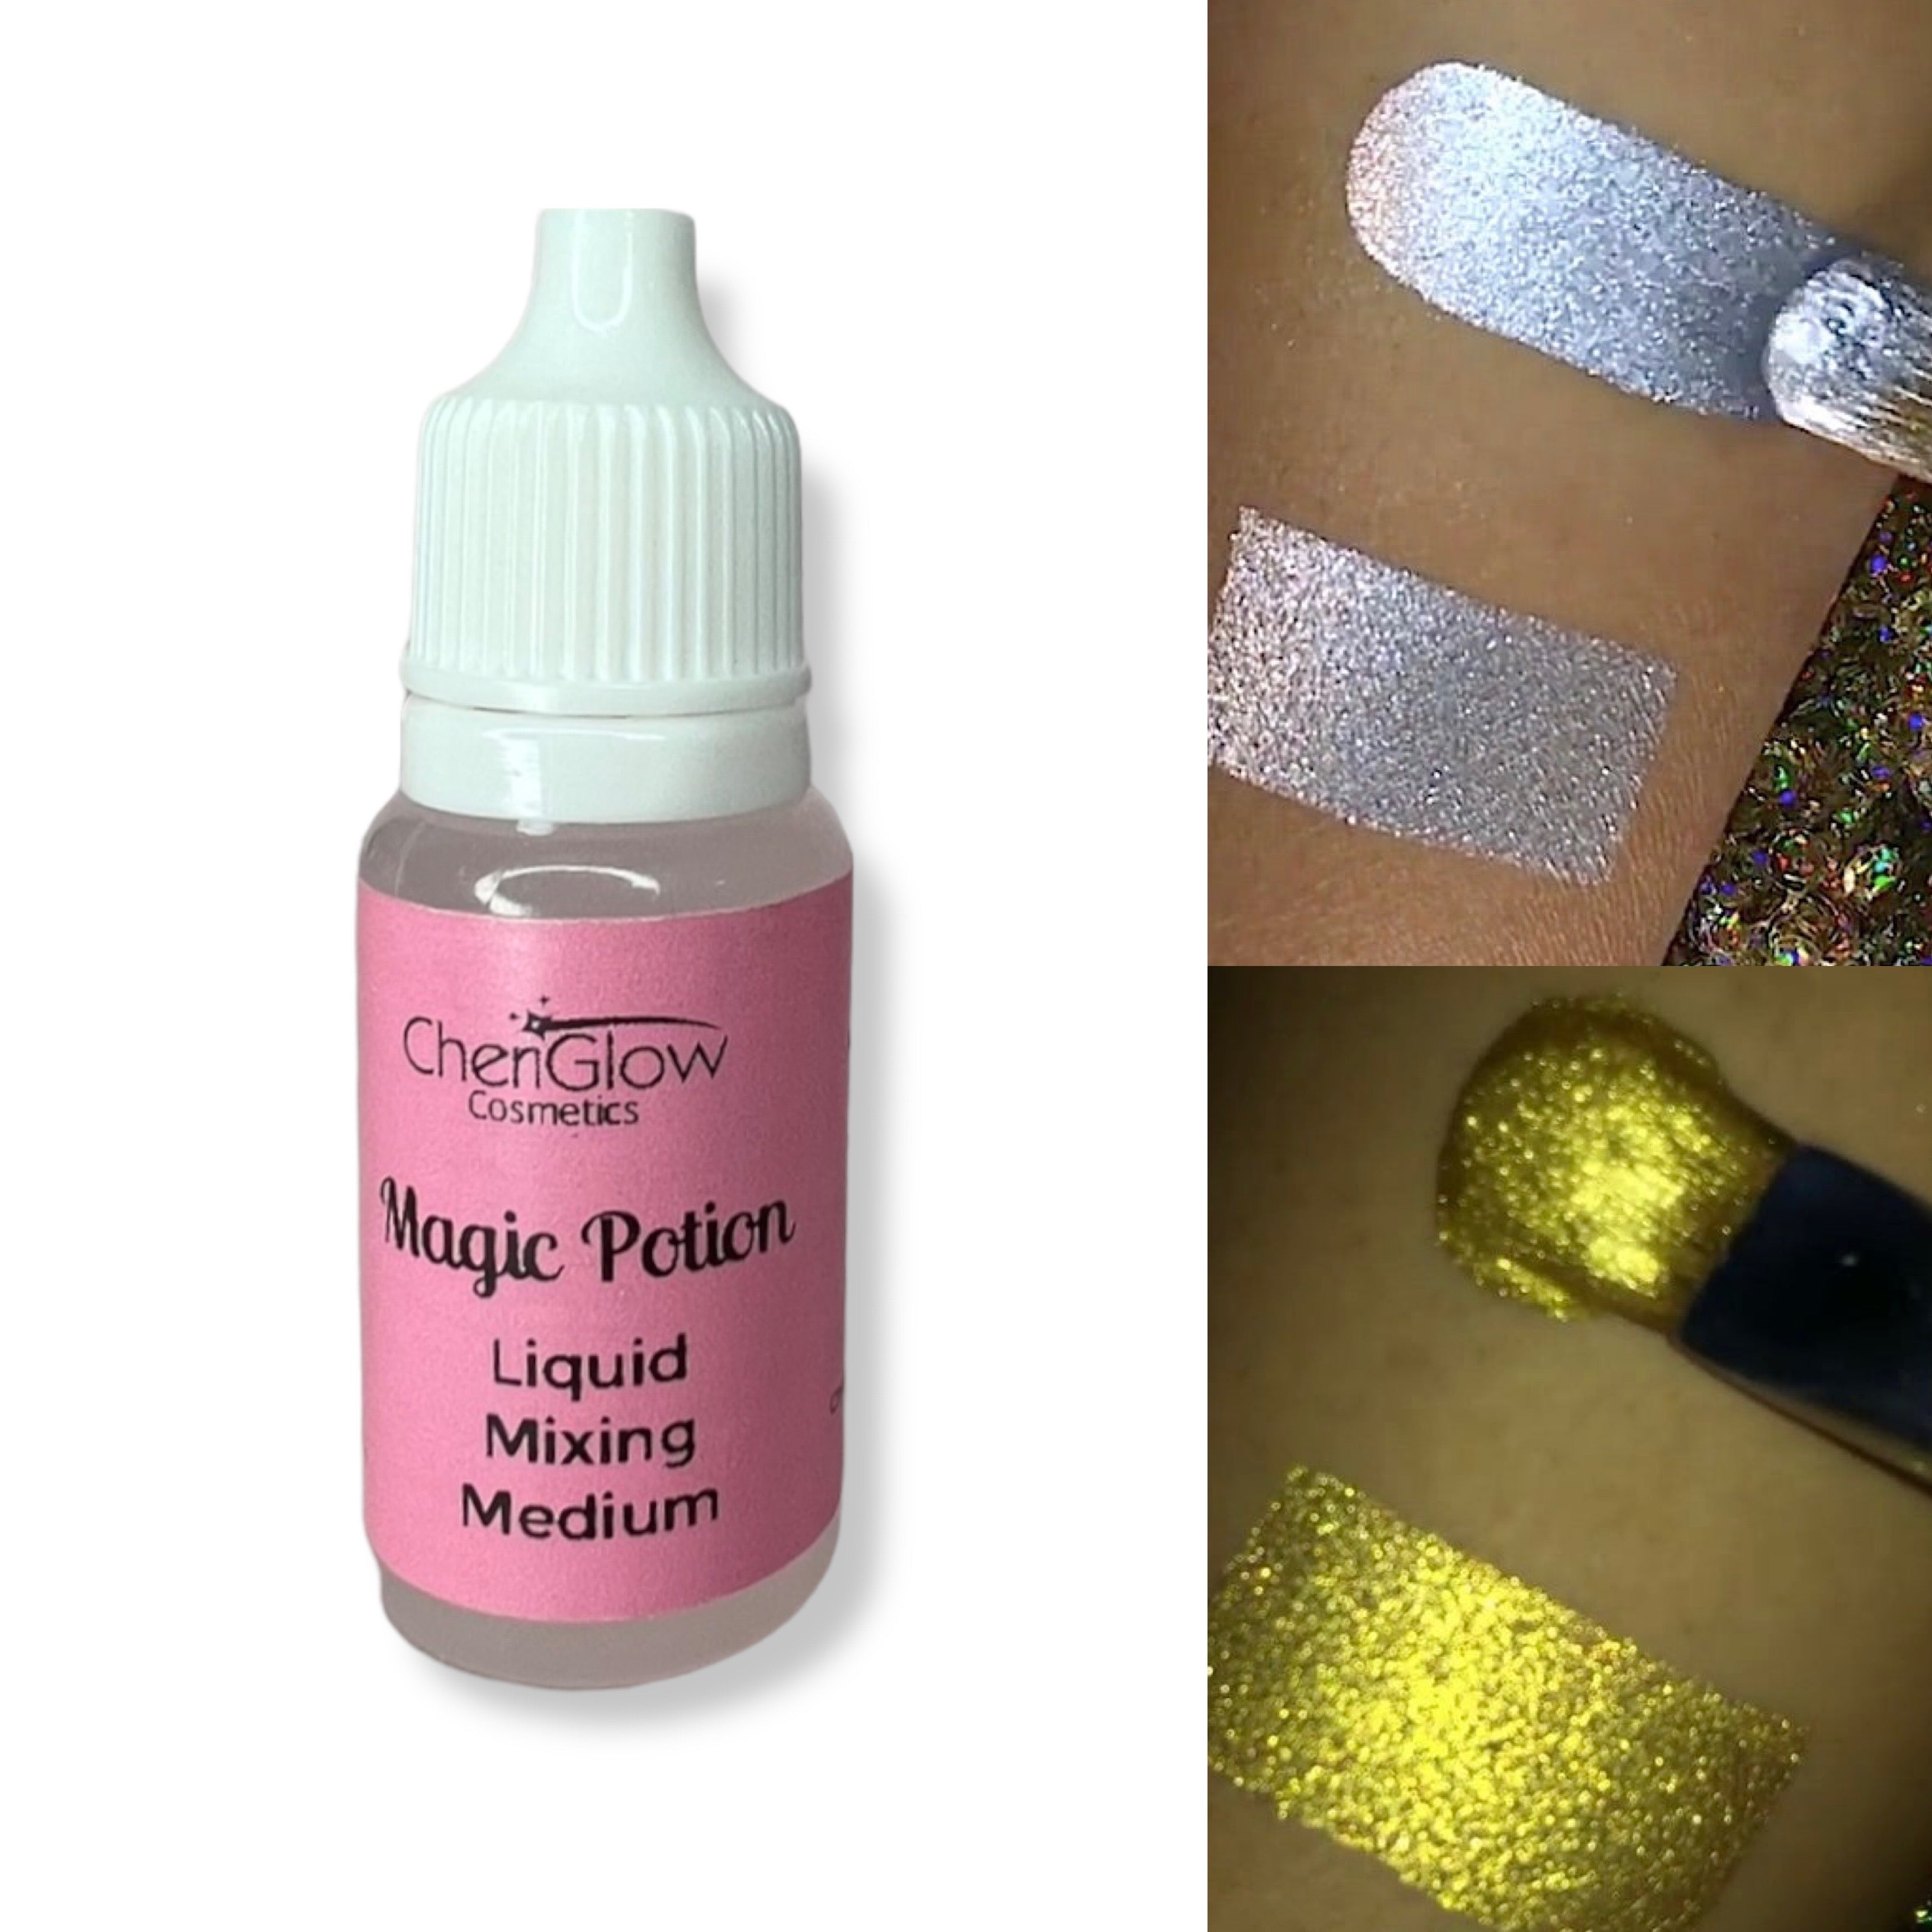 MAGIC POTION LIQUID Mixing Medium, Makeup Mixing, Mix Pigments